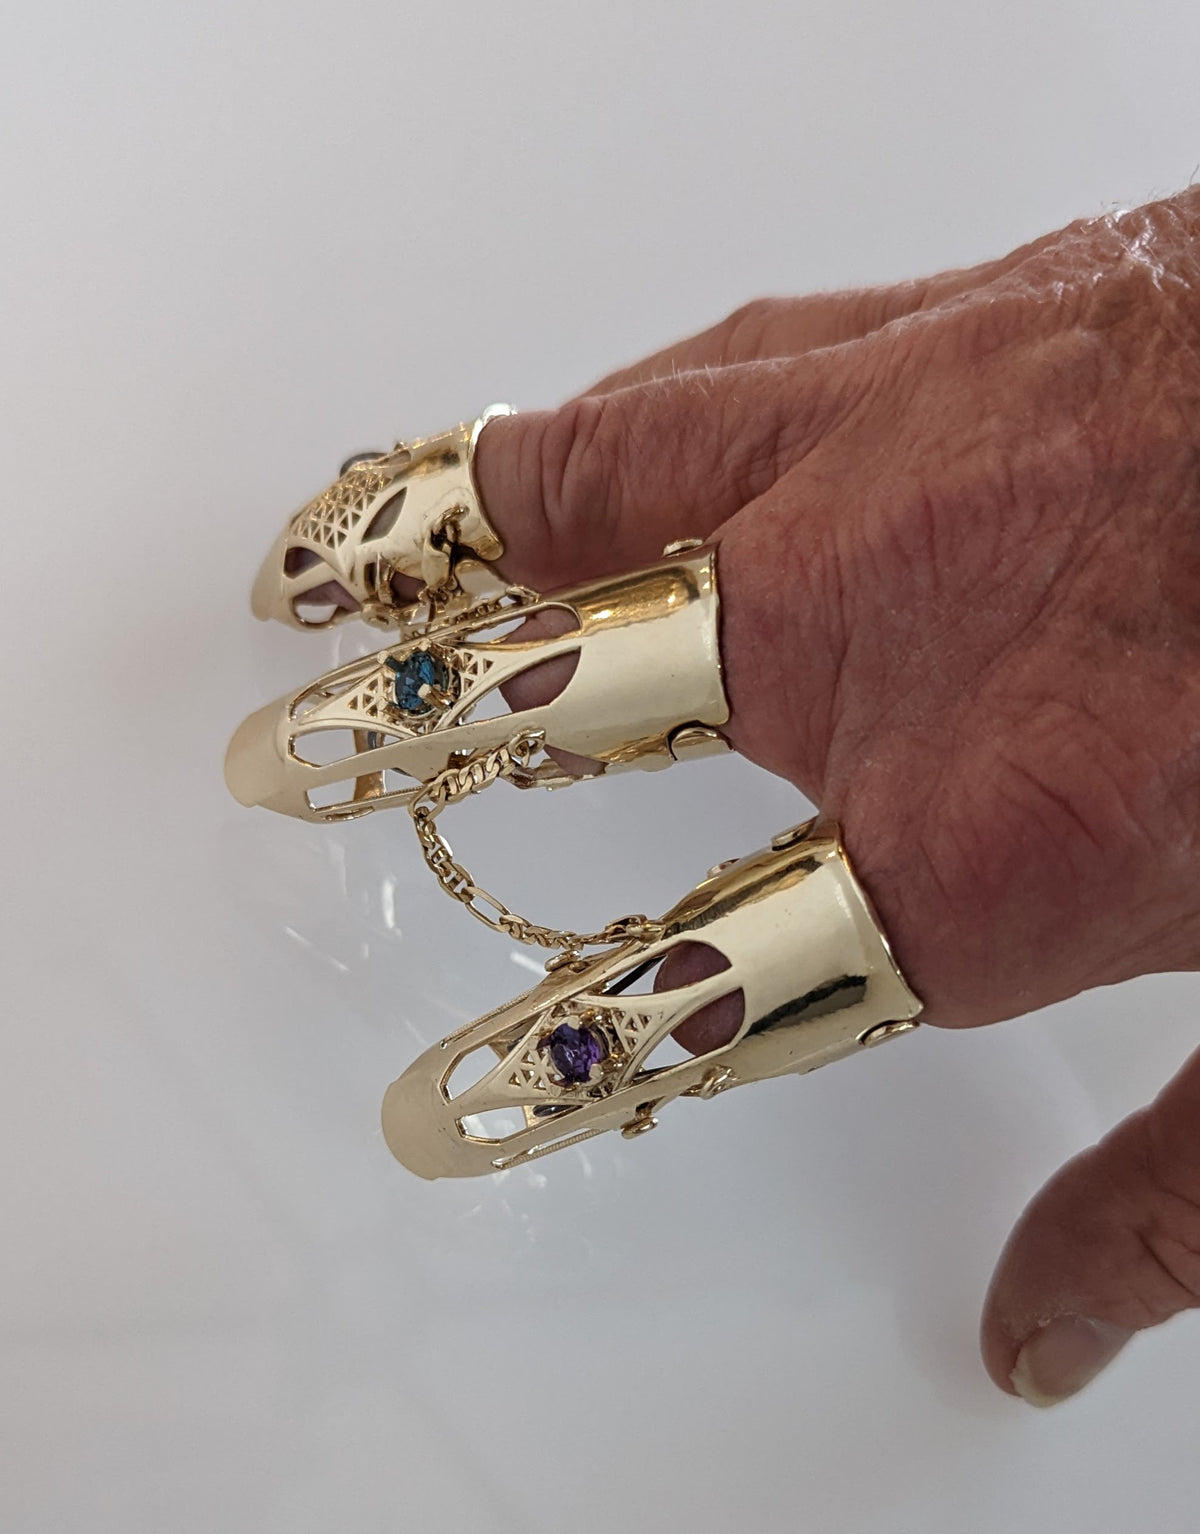 The Monarch Luxury Prosthetic Jewelry